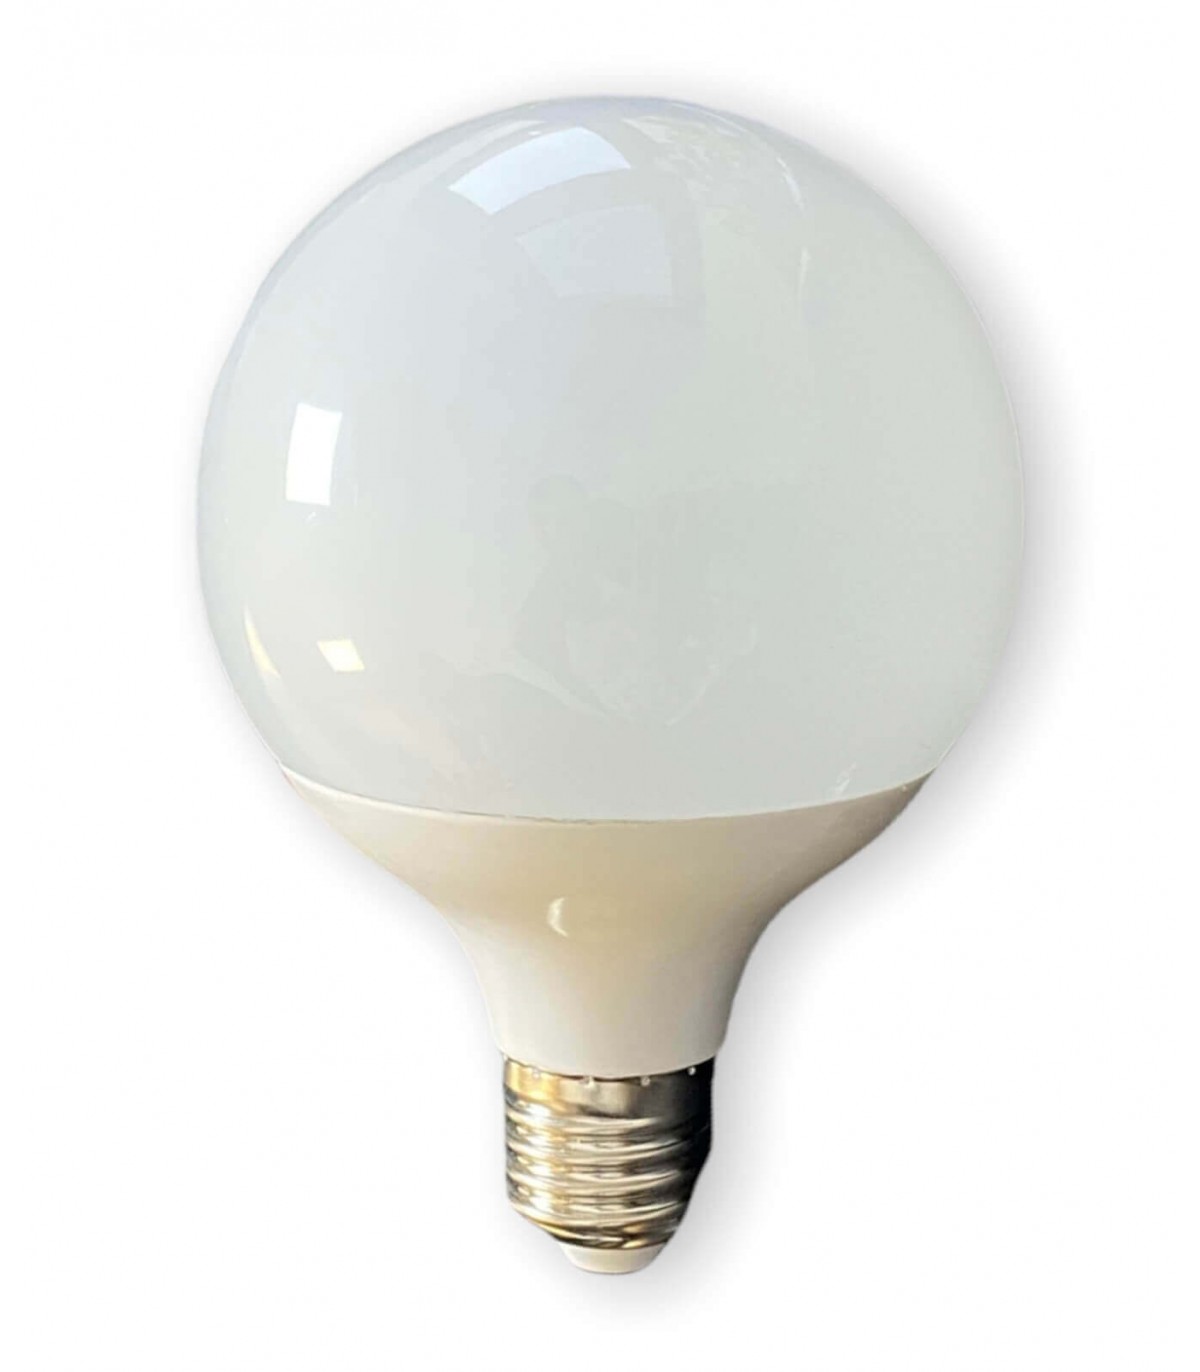 Ampoule LED PHILIPS CorePro E27 12.5W (100W) 6500K blanc froid 1521 lm